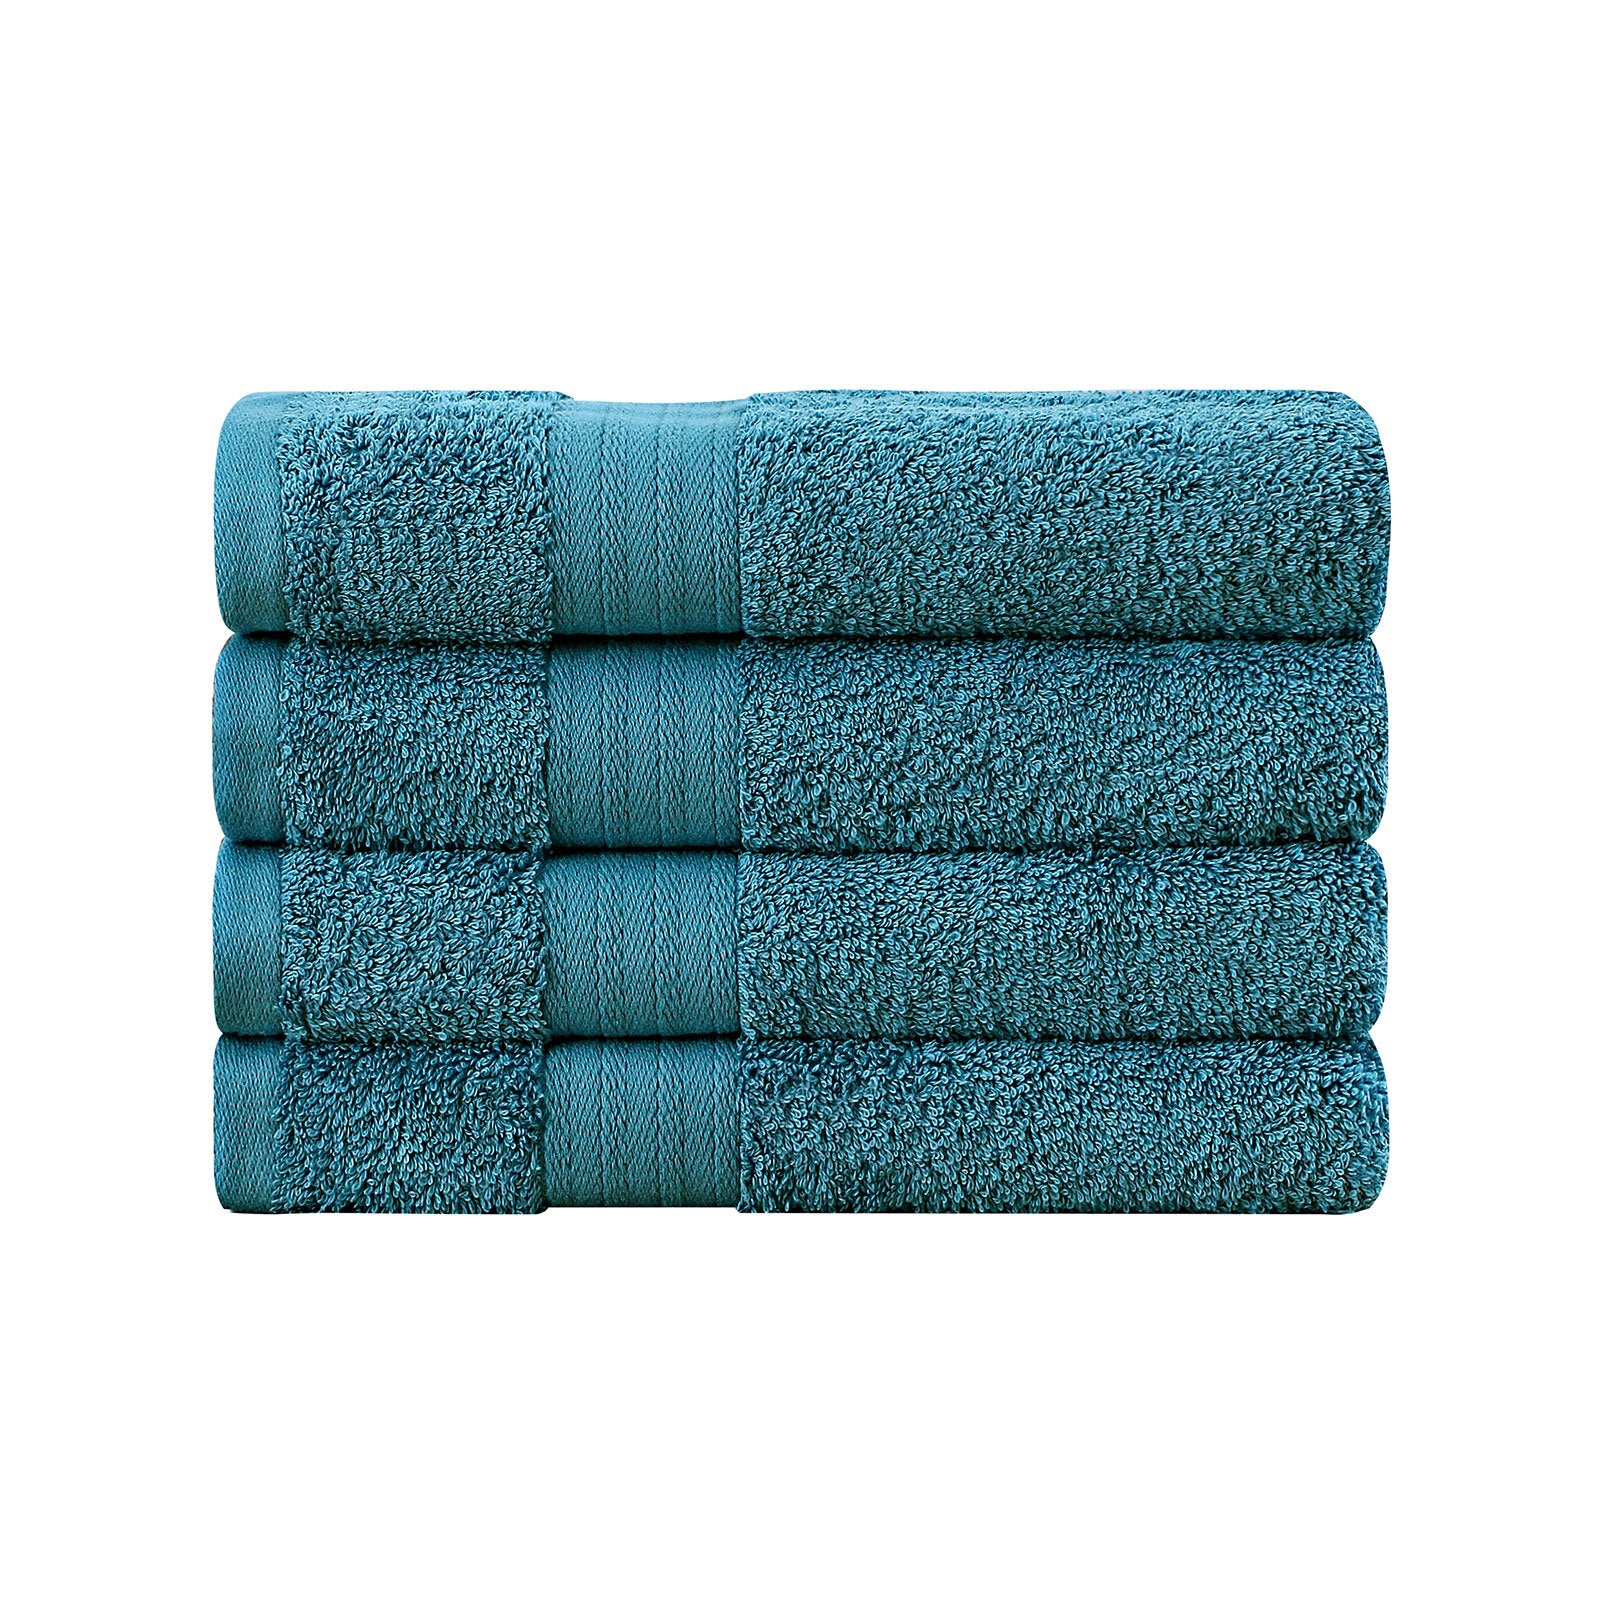 Linenland Bath Towel 4 Piece Cotton Hand Towels Set - Blue - Newstart Furniture